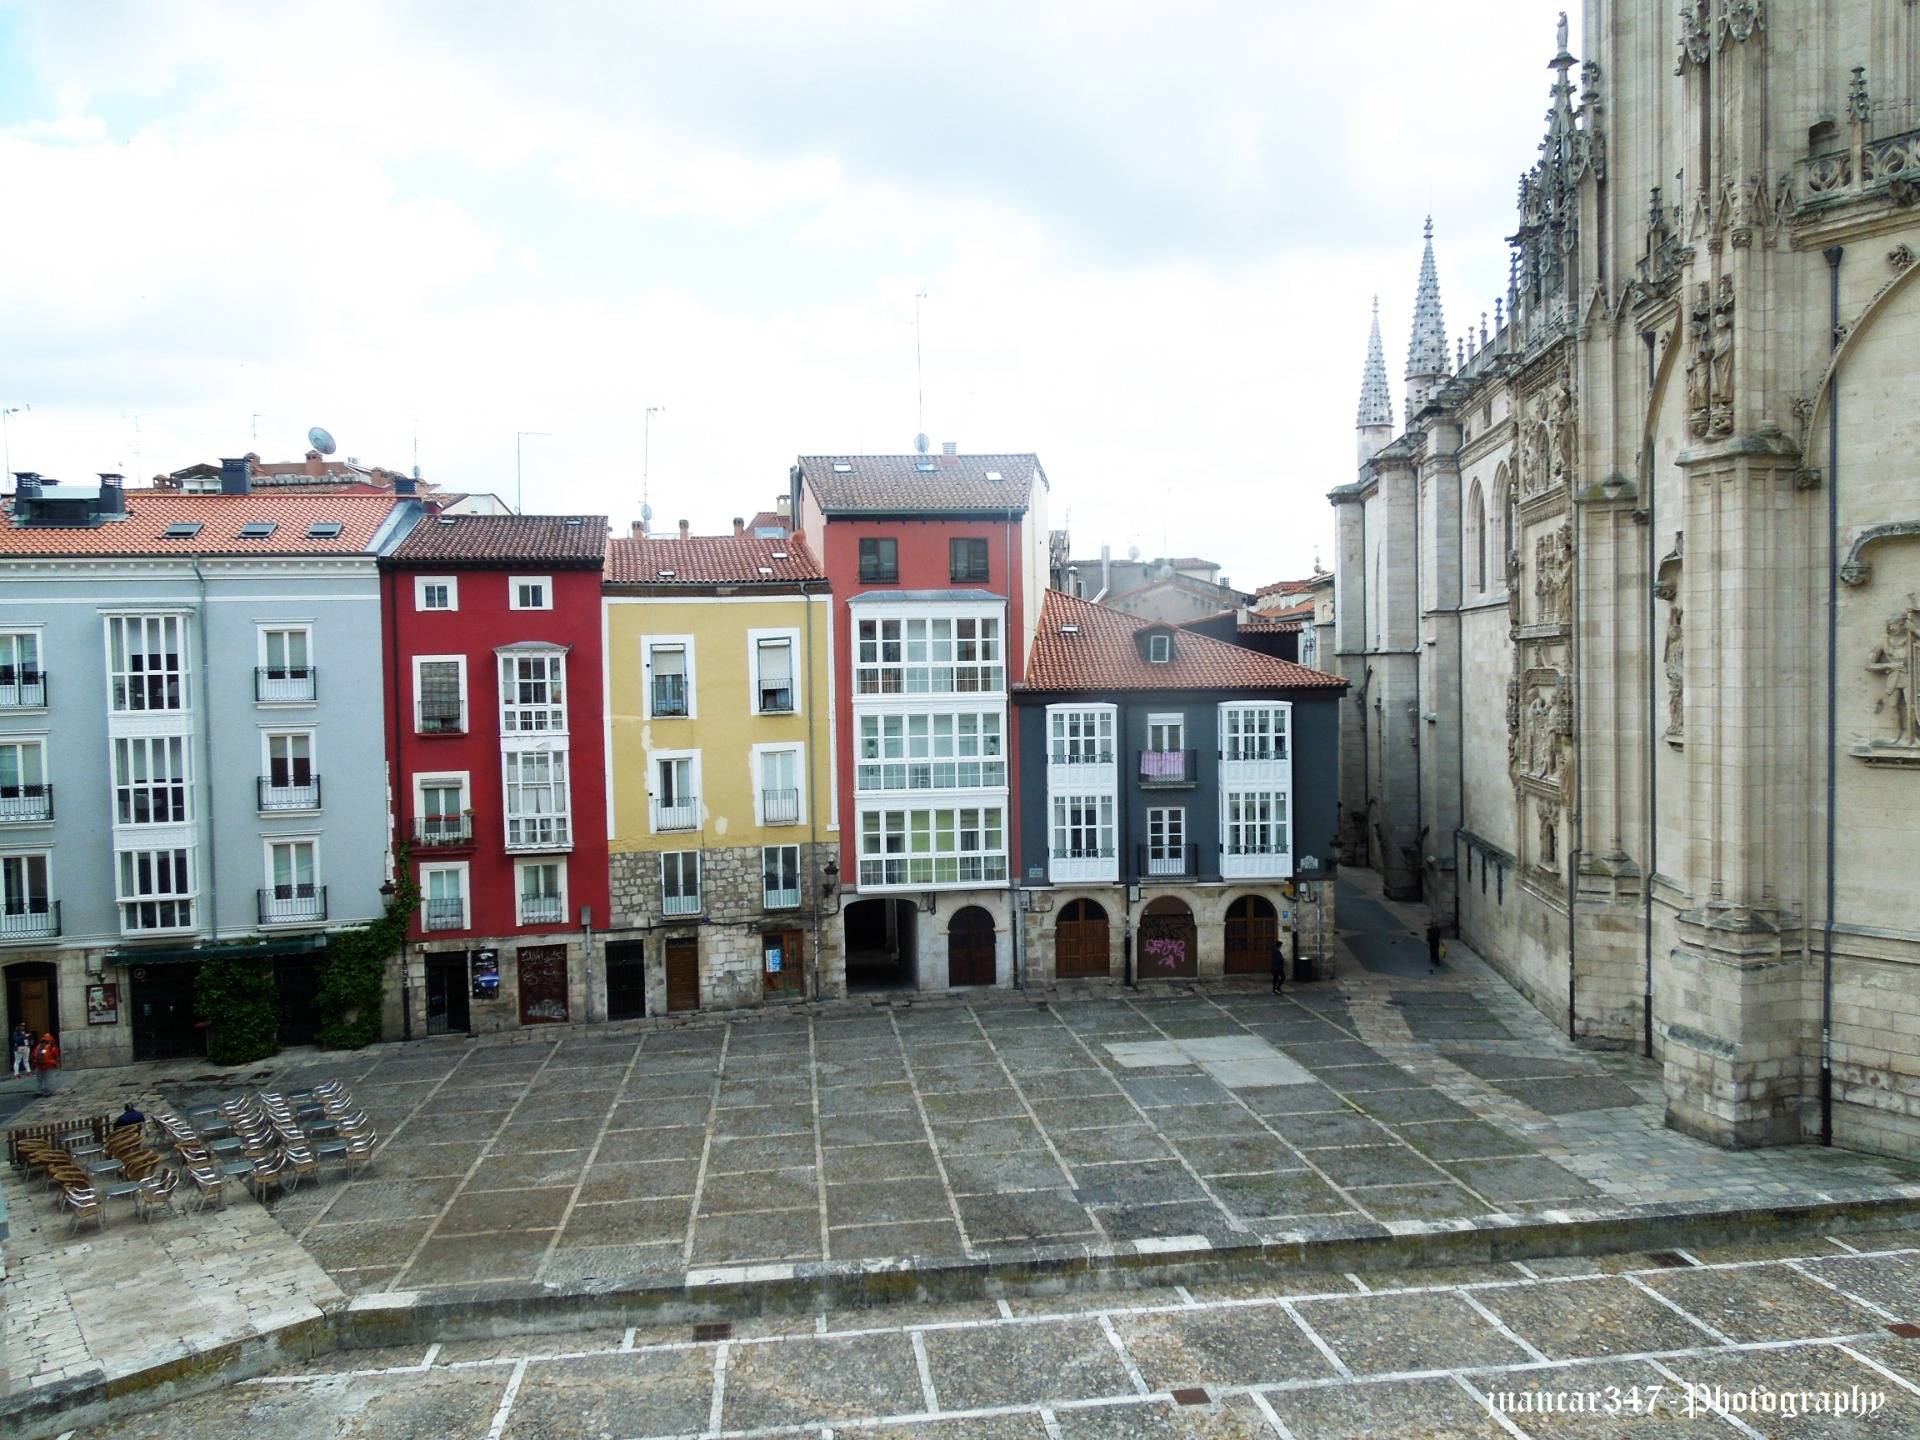 A walk through the Historic Center of Burgos